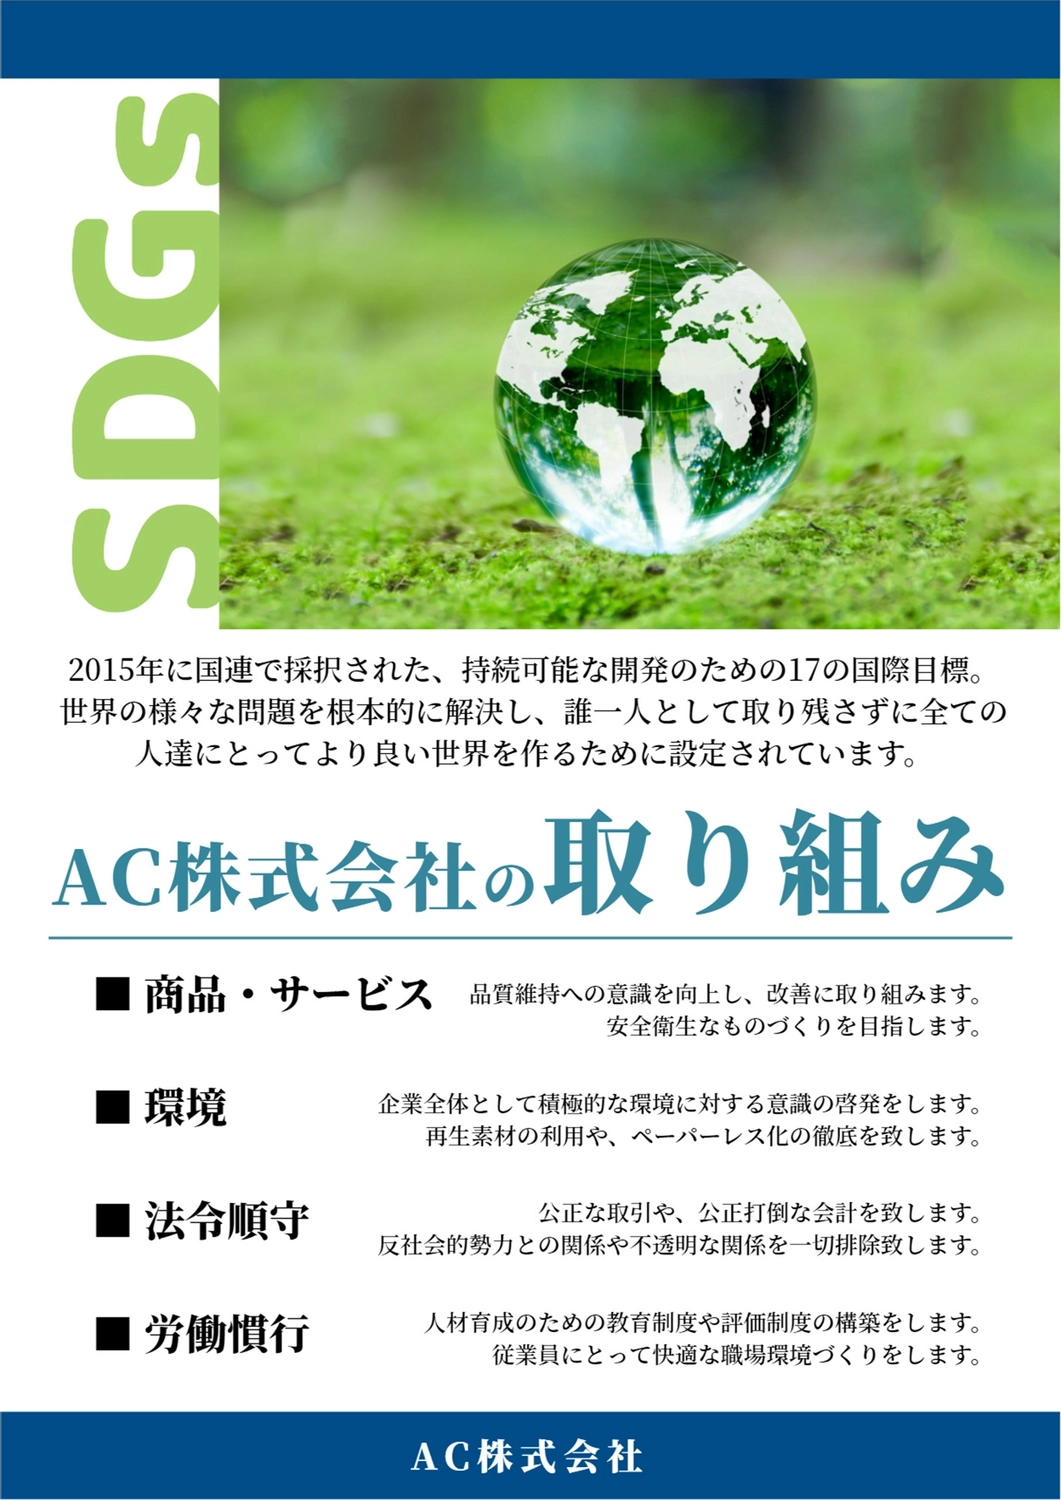 透明な地球のSDGsポスター, 유리 공, 생태, 환경, 포스터 템플릿